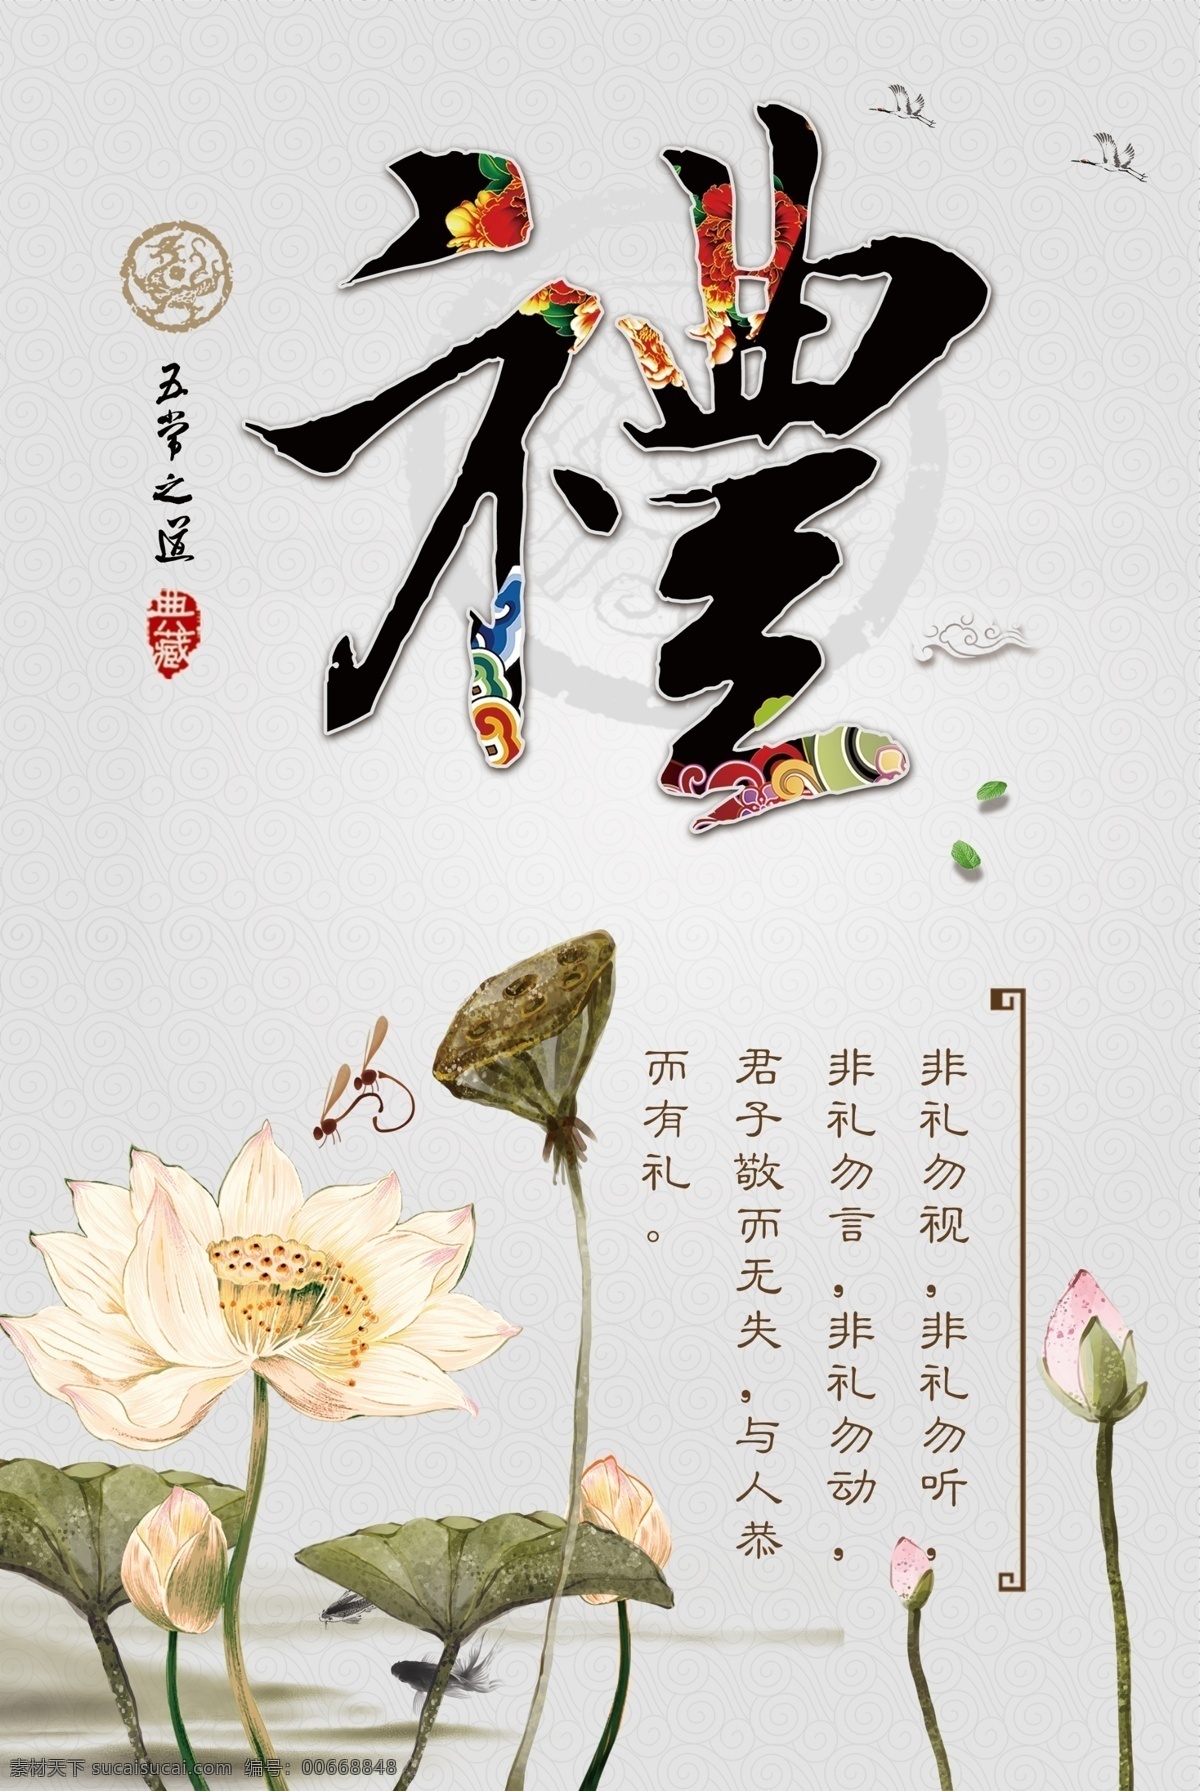 道德展板 中国风展板 传统文化 国学经典 礼 传统文化展板 展板模板